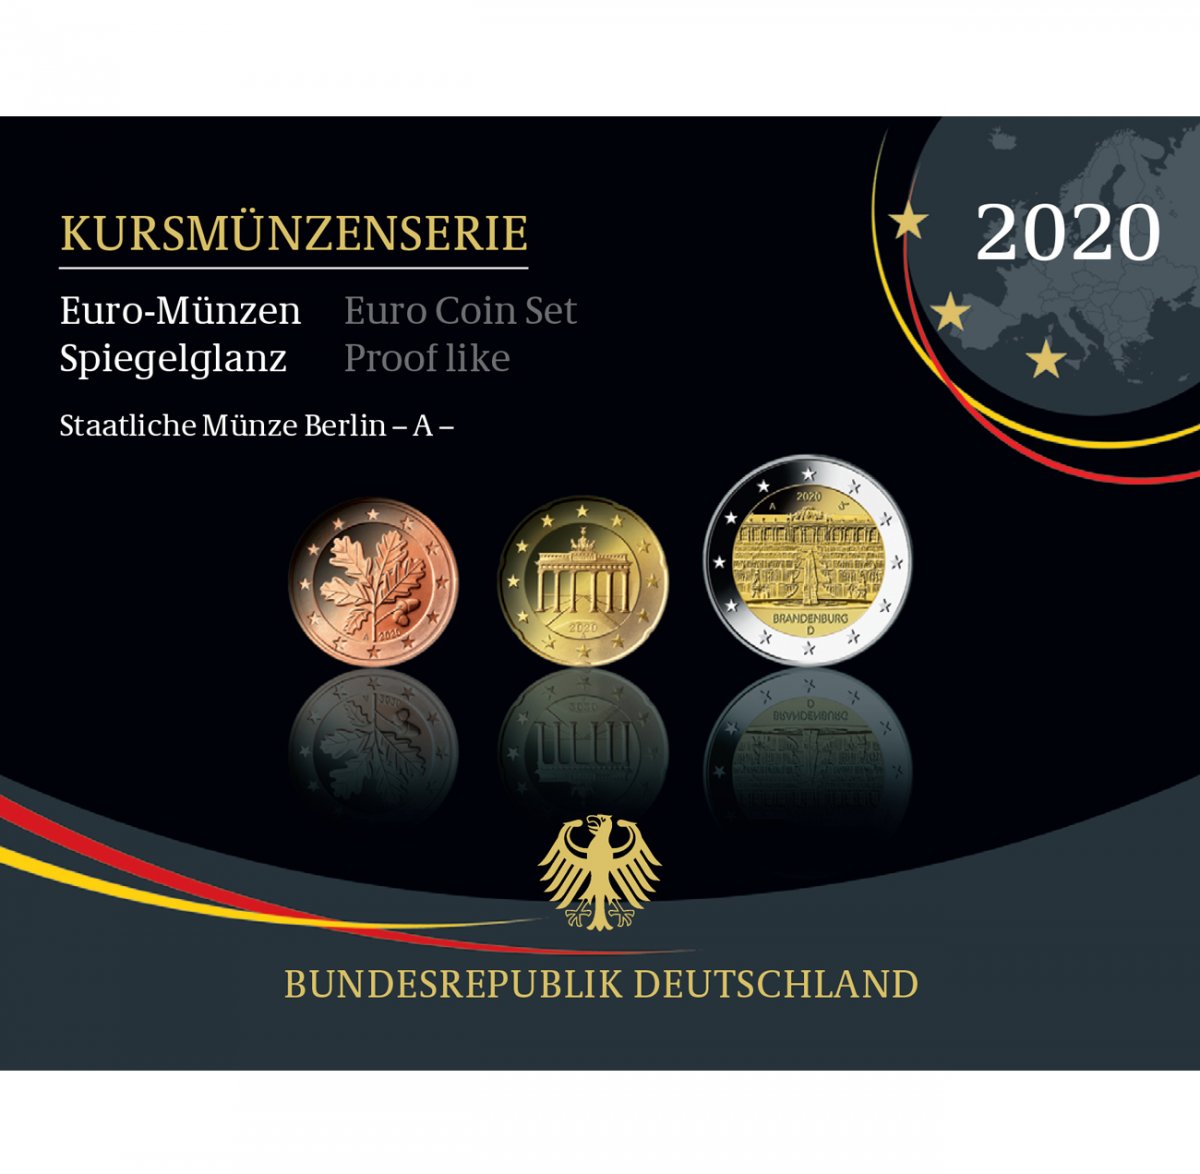 Kursmünzenserie Sammlermünzen 2020 